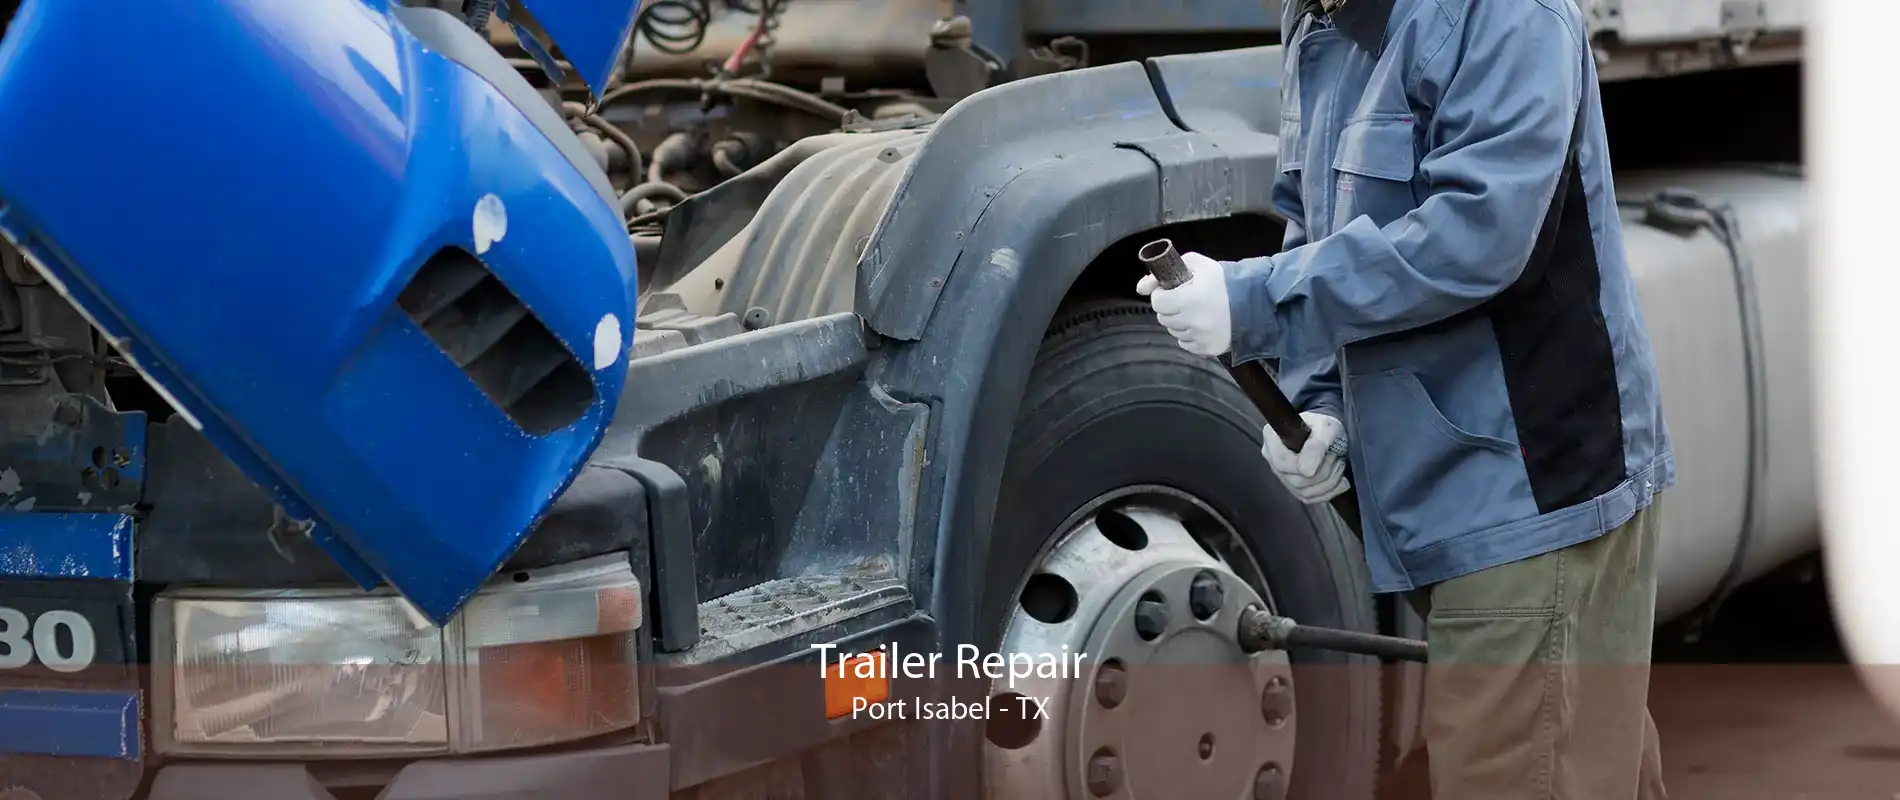 Trailer Repair Port Isabel - TX